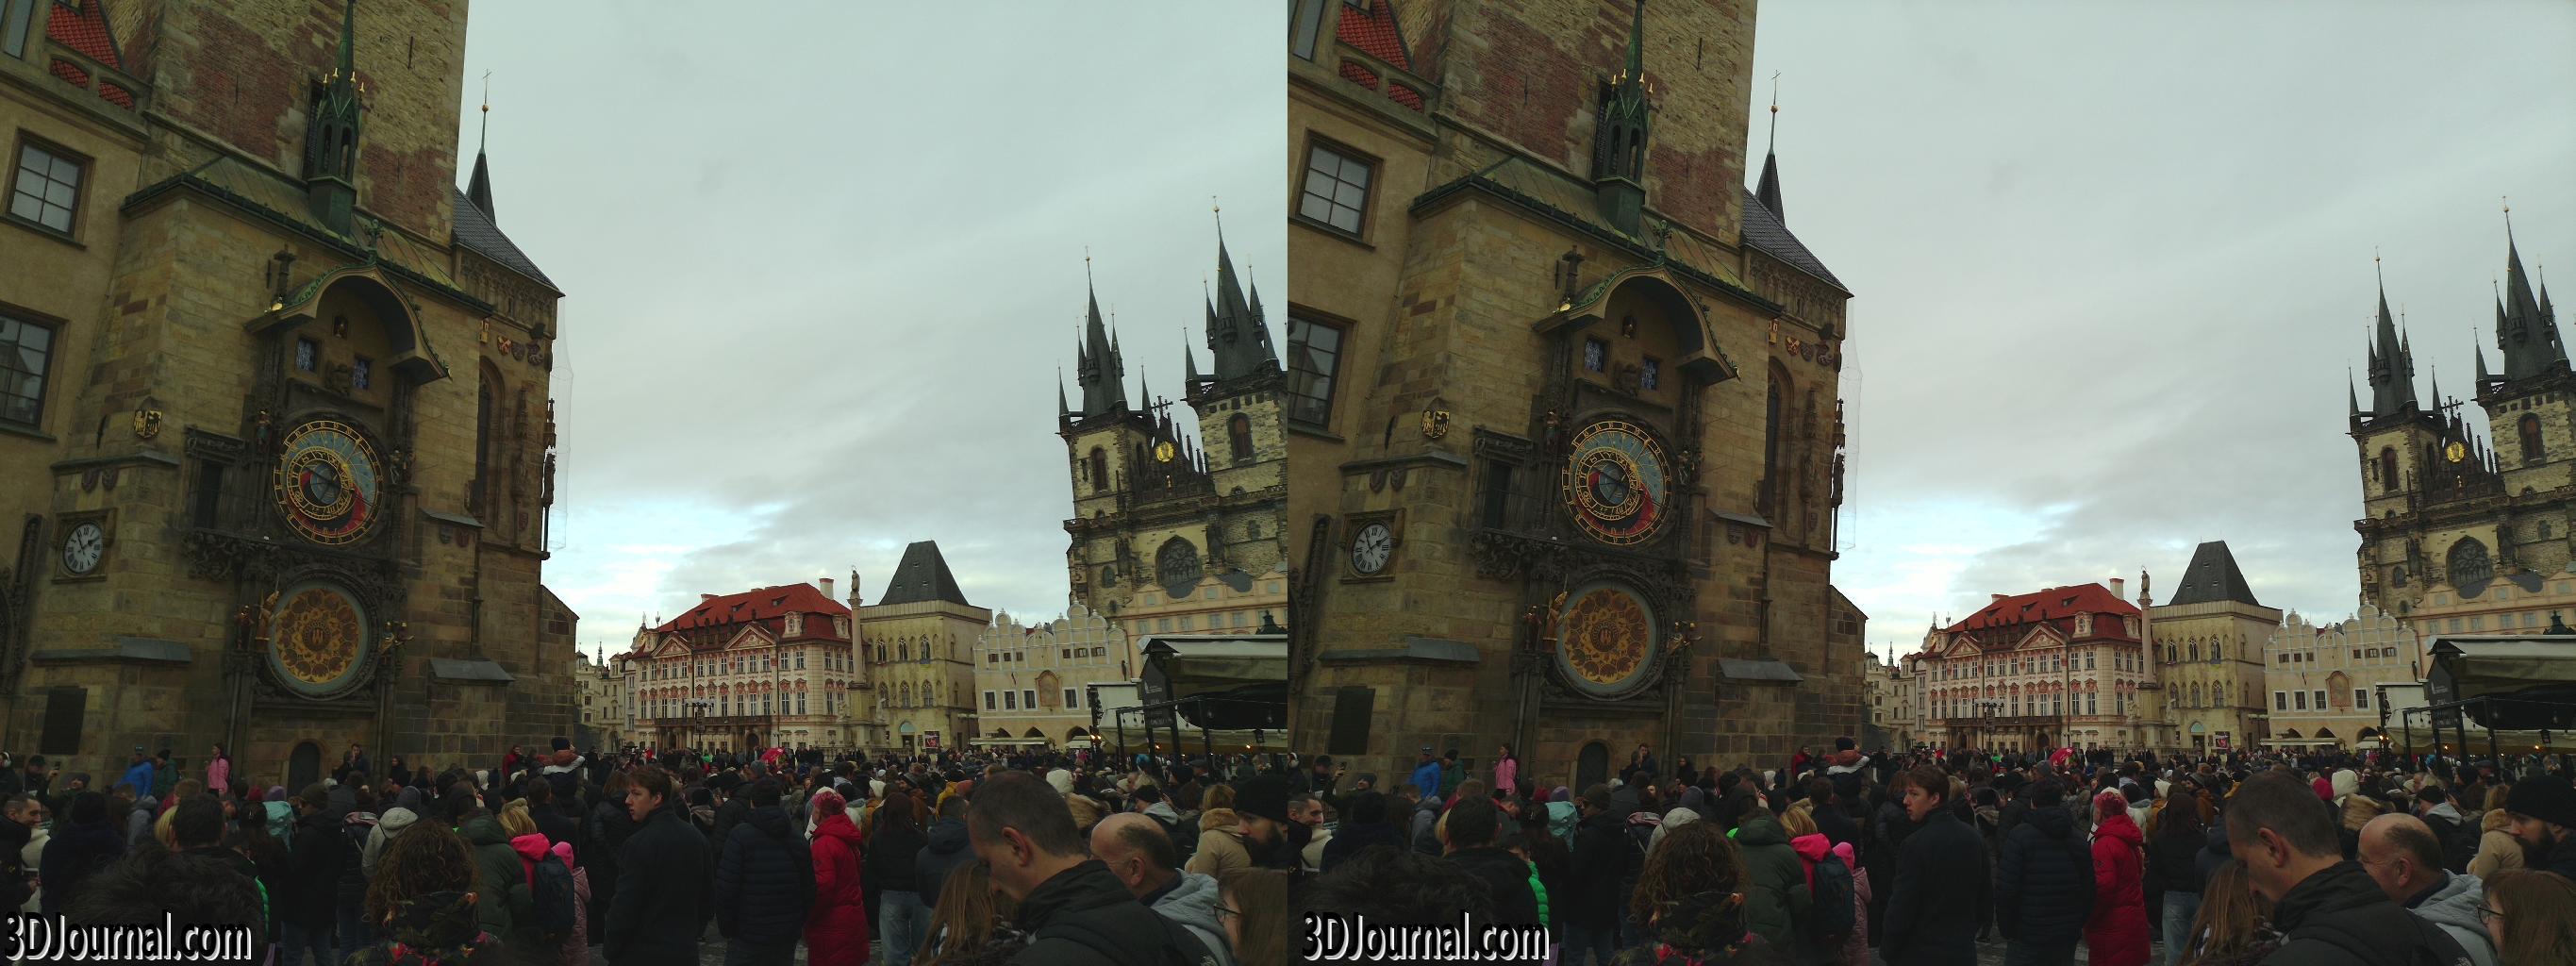 Altstädter Ring in Prag - bei der Astronomischen Uhr